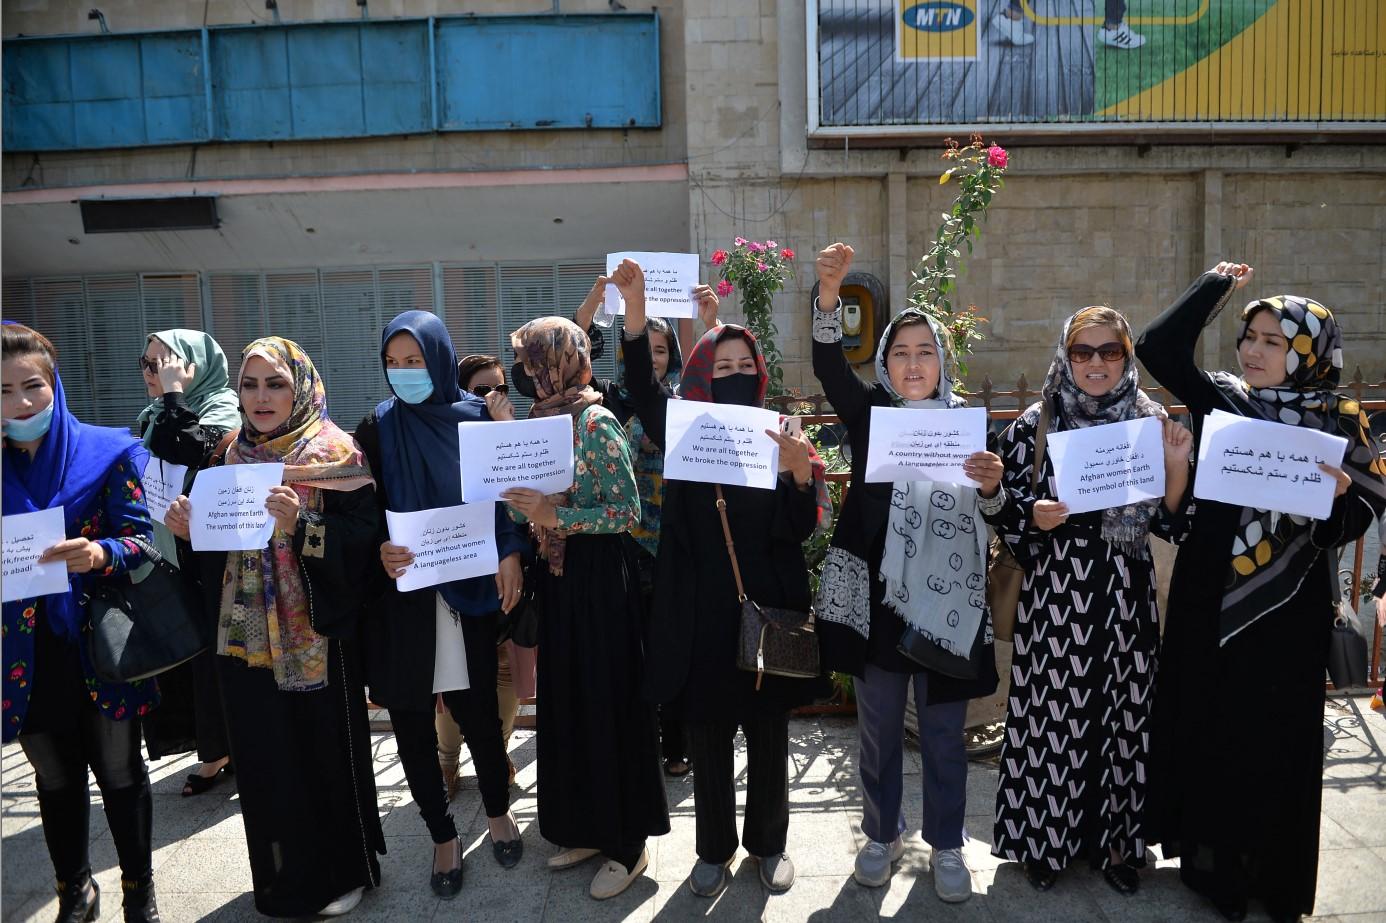 Protest je održan na platou ispred Predsjedničke palače Afganistana - Avaz